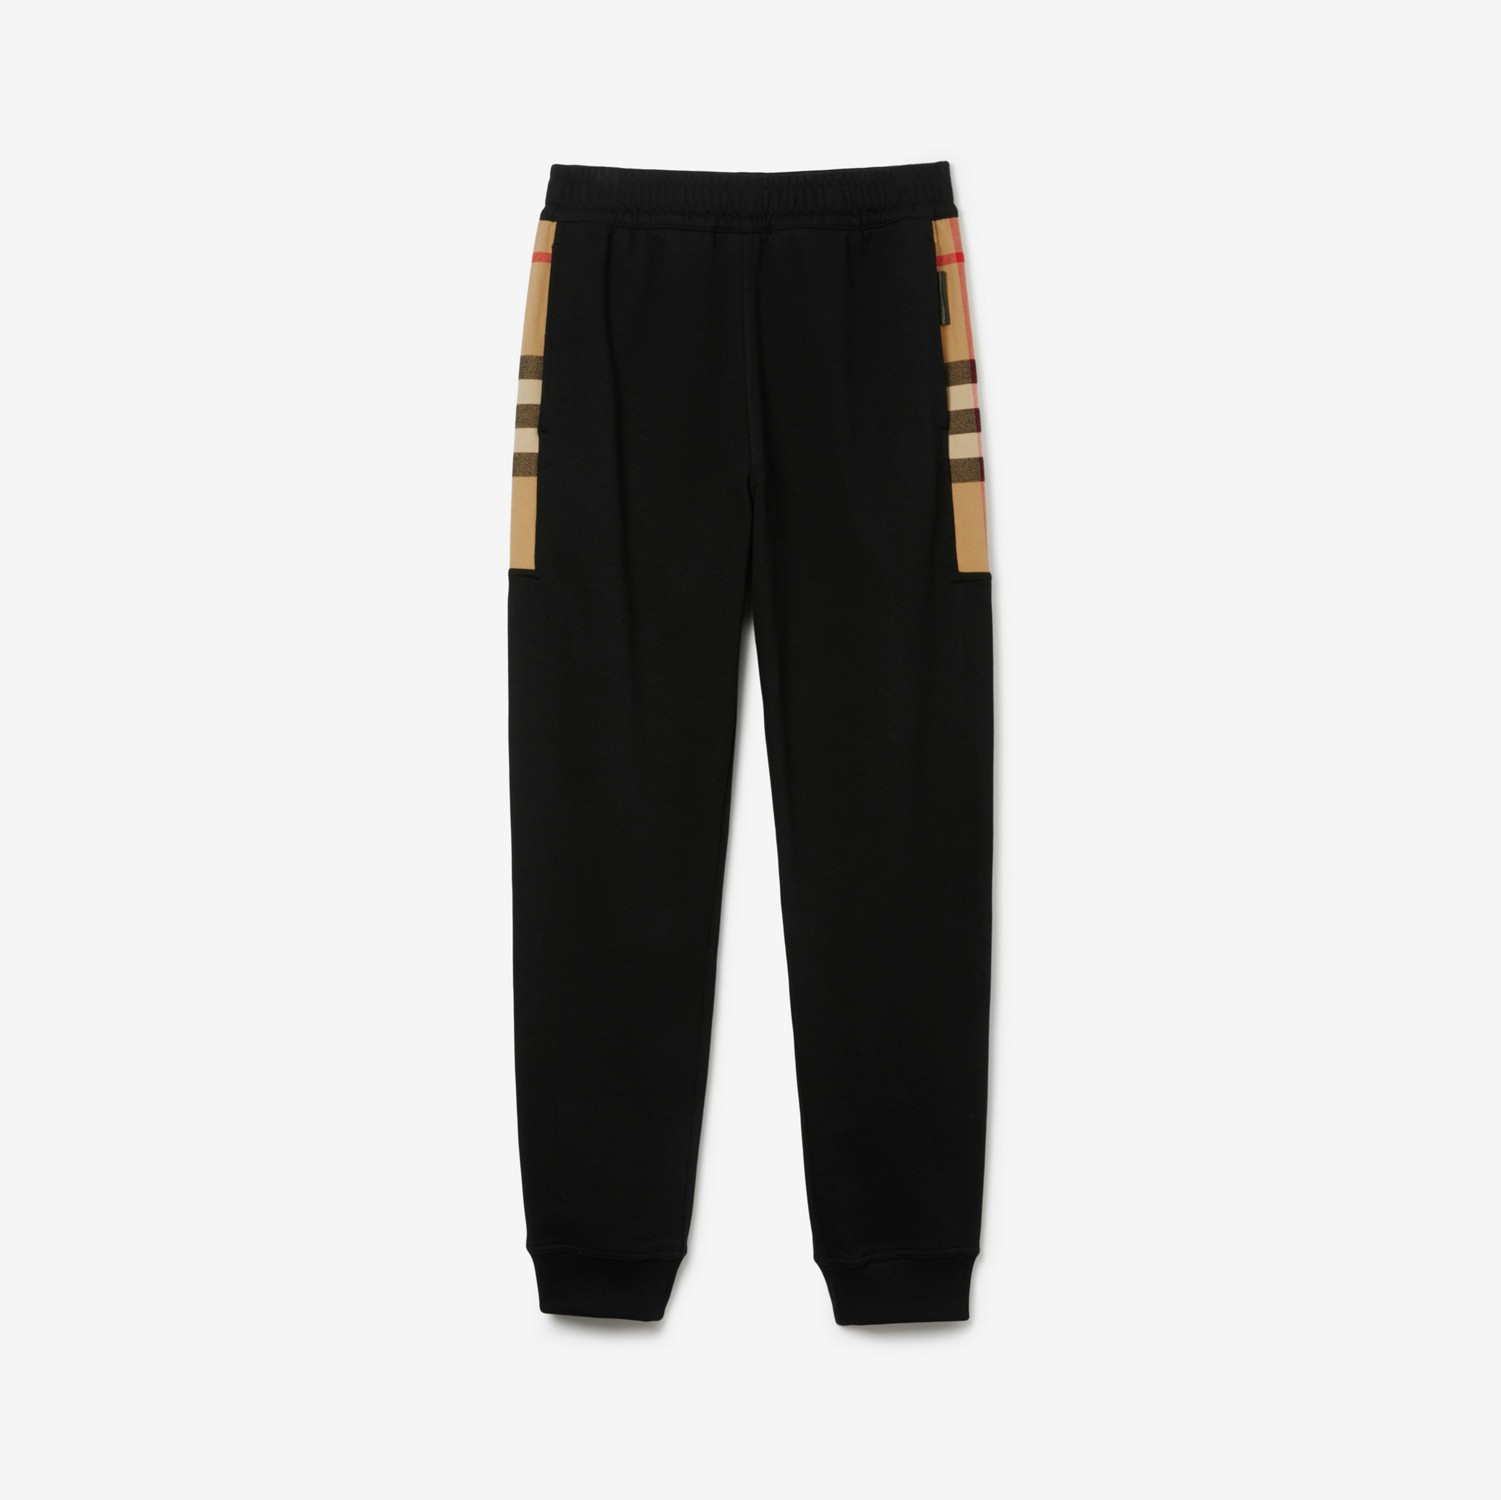 Pantalones de jogging en algodón con paneles Check